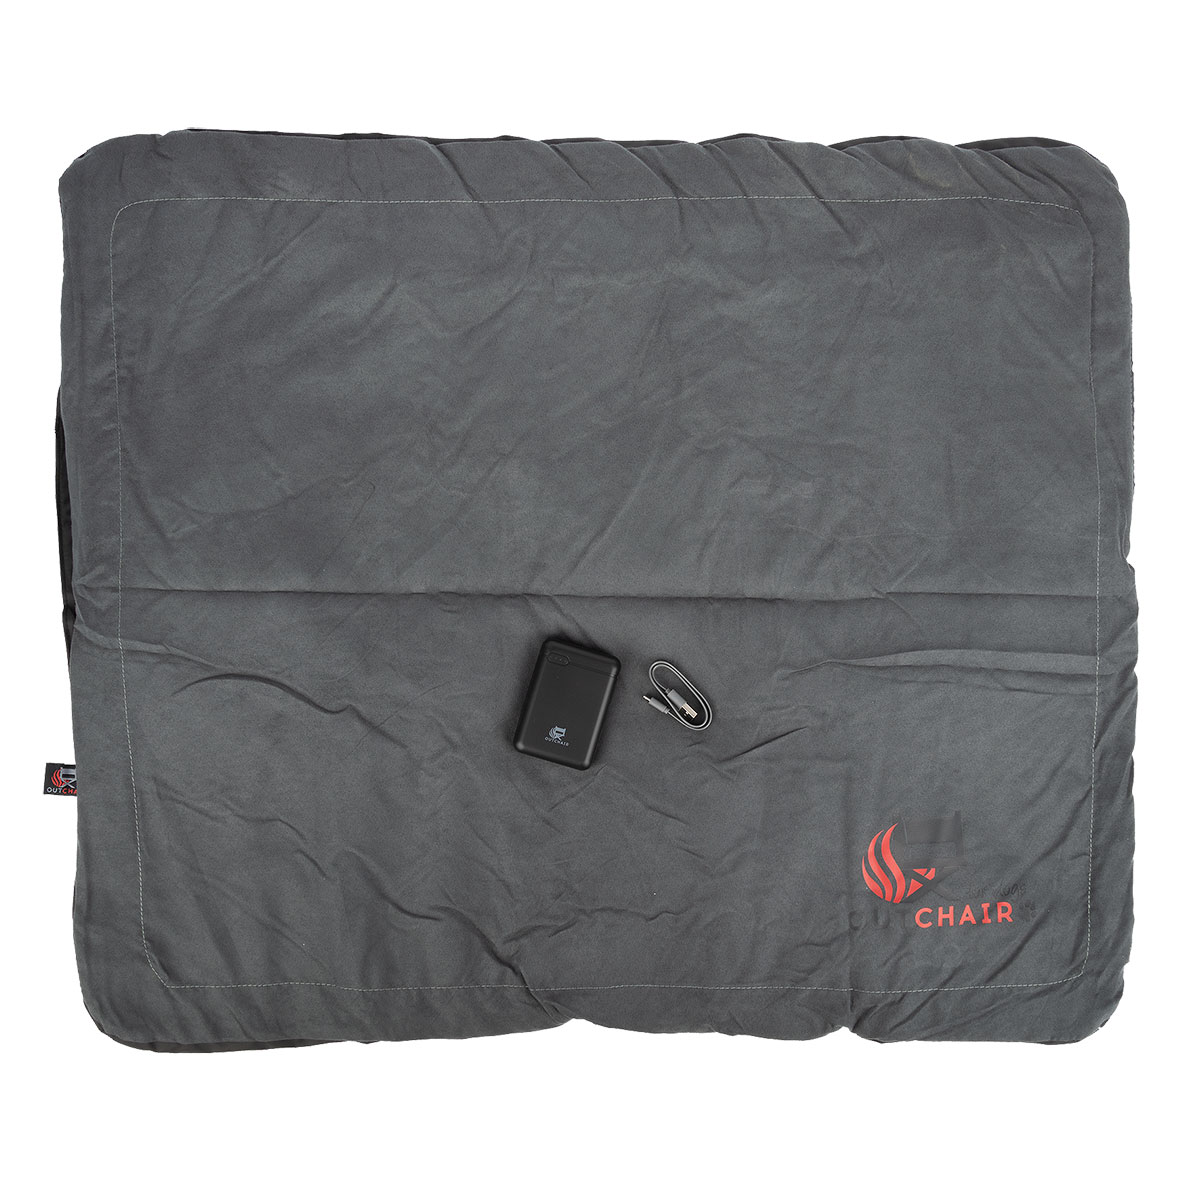 Heizdecke für Haustiere Comforter S 70x85cm, 129,00 €